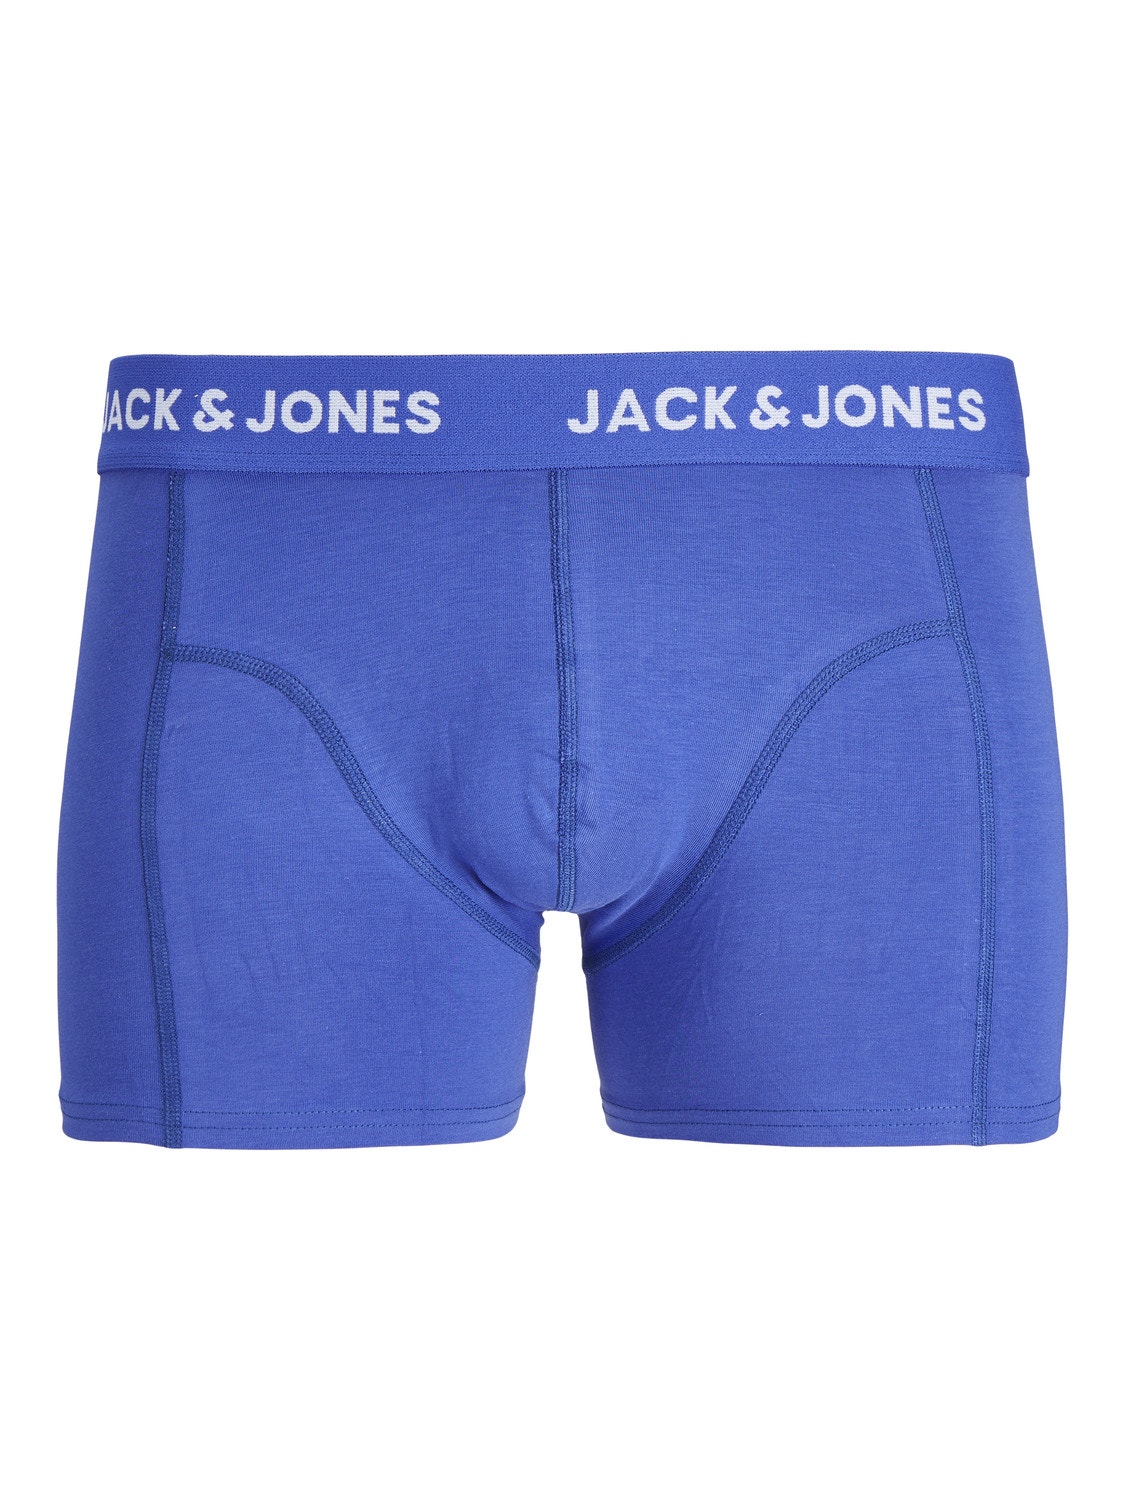 Jack & Jones 3-pakuotės Trumpikės -Dazzling Blue - 12255843